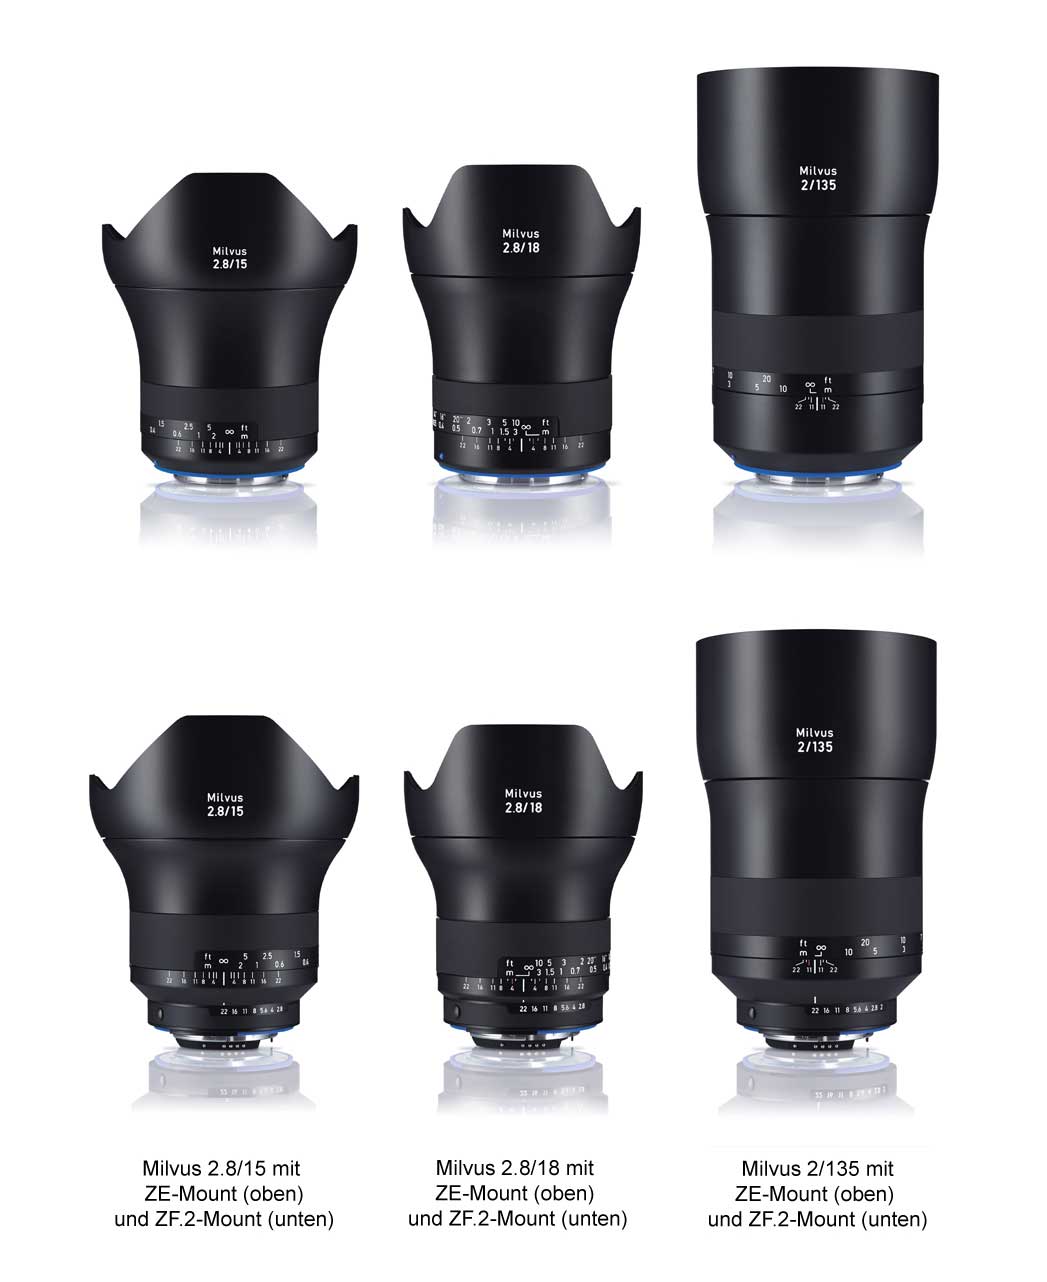 Die Brennweiten 15 mm, 18 mm und 135 mm werden jeweils als ZF.2-Mount für Nikon-Kameras und ZE-Mount für Canon-Kameras angeboten. Die ZF.2-Version ist zusätzlich mit einem manuellen Blendenring ausgestattet.